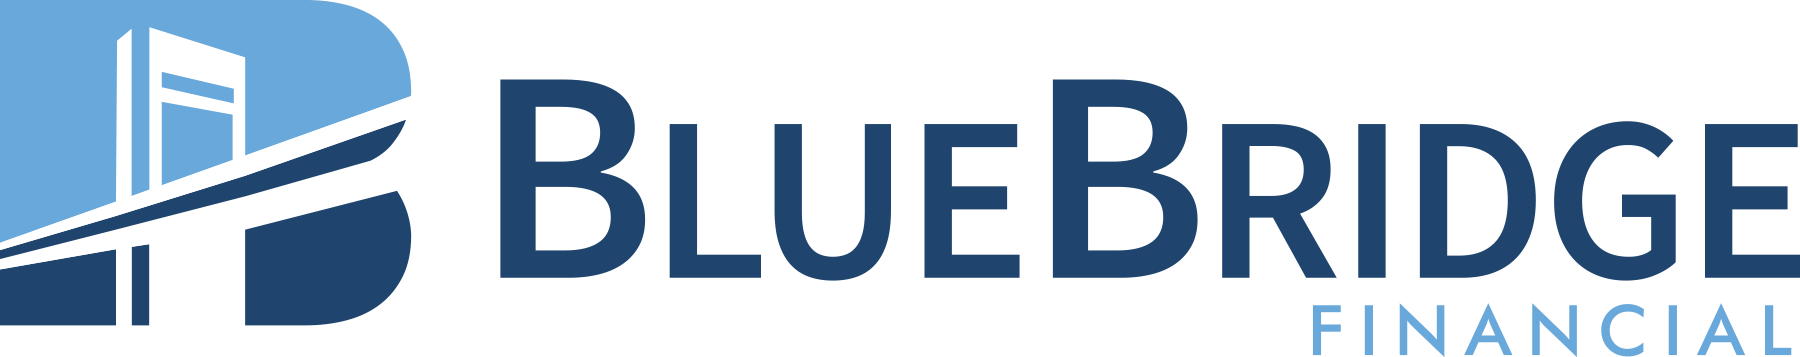 bluebridge logo